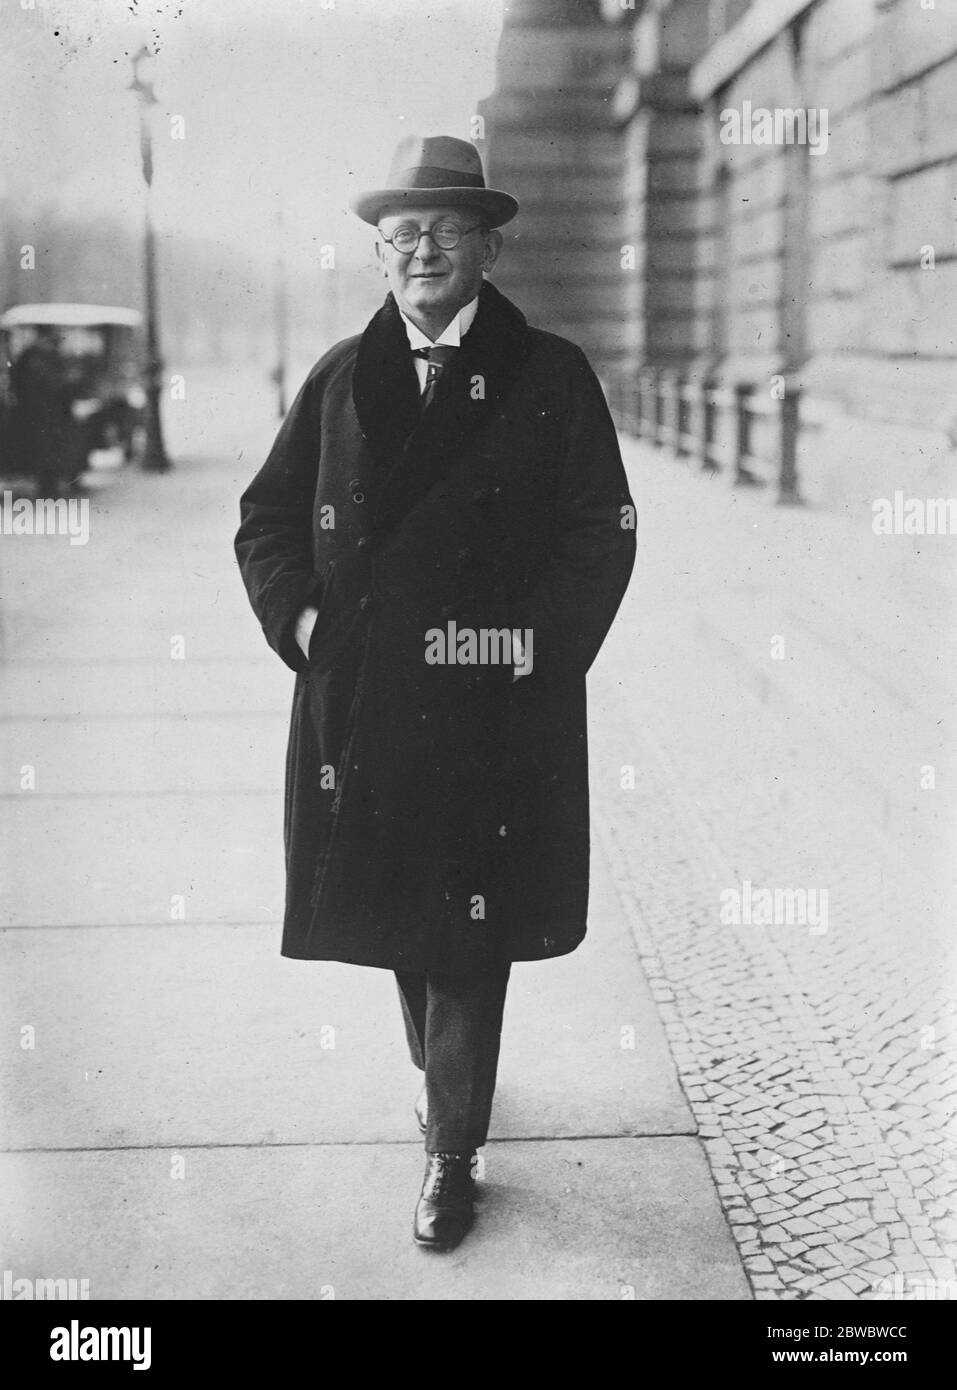 Le démocrate formera un gouvernement de coalition pour l'Allemagne Herr Koch , dirigeant des démocrates , qui s'est engagé à former un gouvernement de coalition pour l'Allemagne le 14 décembre 1925 Banque D'Images